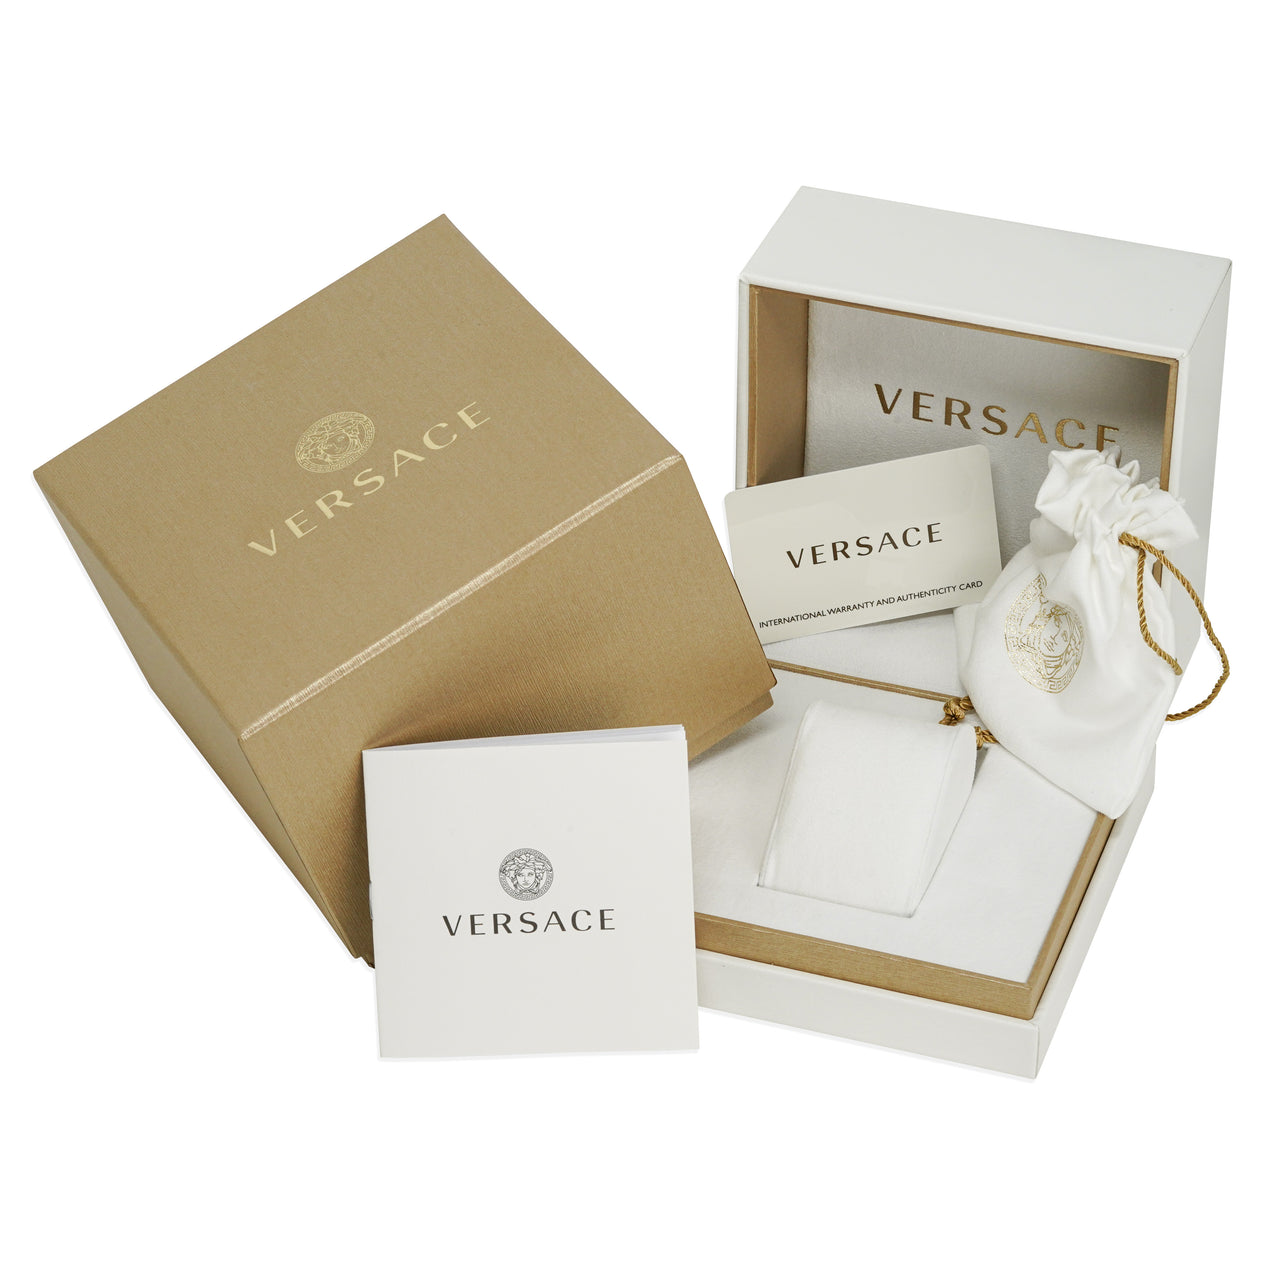 Versace Men's Watch V-Essential White VEJ400121